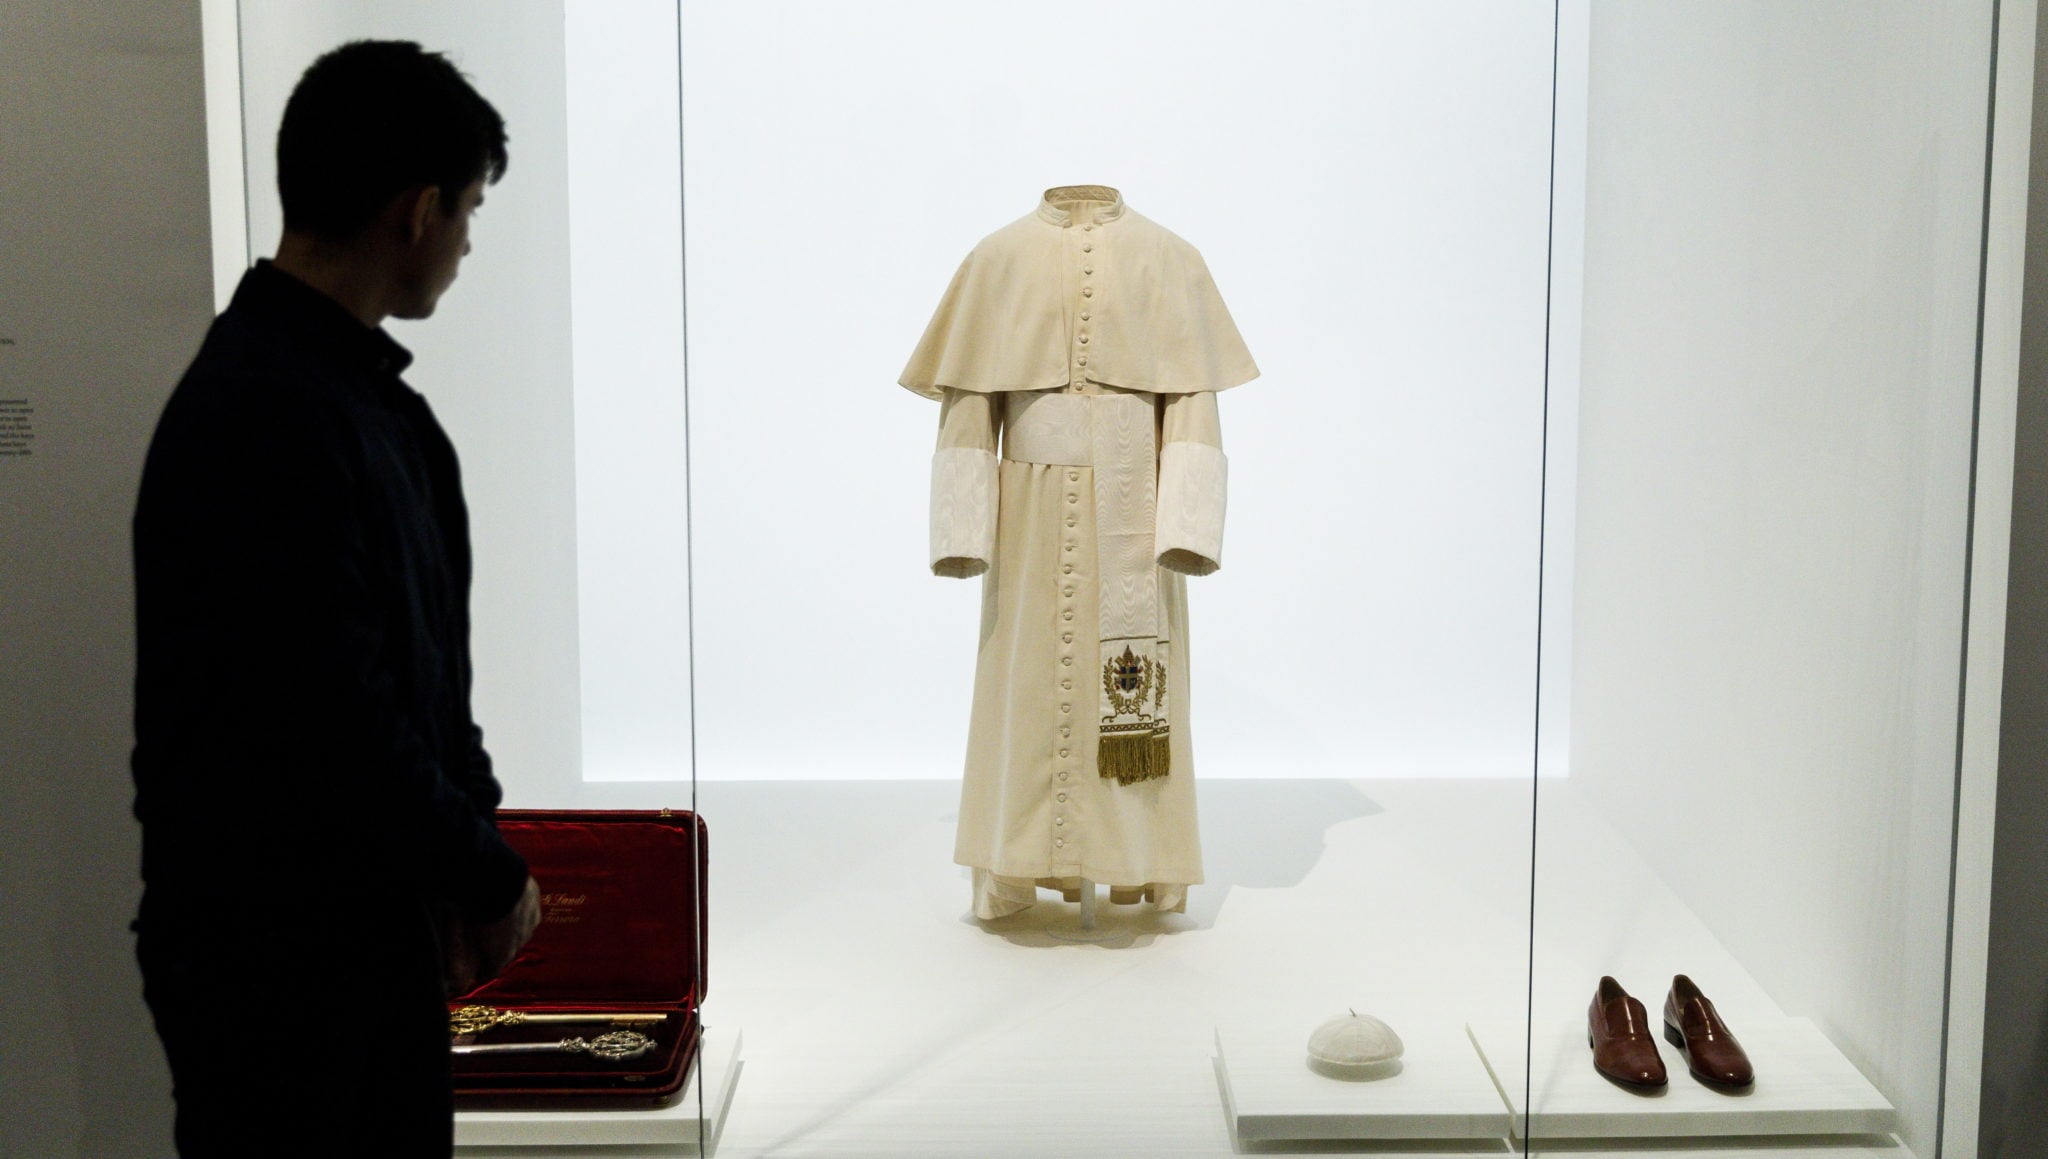 Nowy Jork: Papieska sutanna noszona przez św. Jana Pawła II na wystawie 'Heavenly Bodies: Fashion and the Catholic Imagination’, fot: Justin Lane, PAP/EPA 